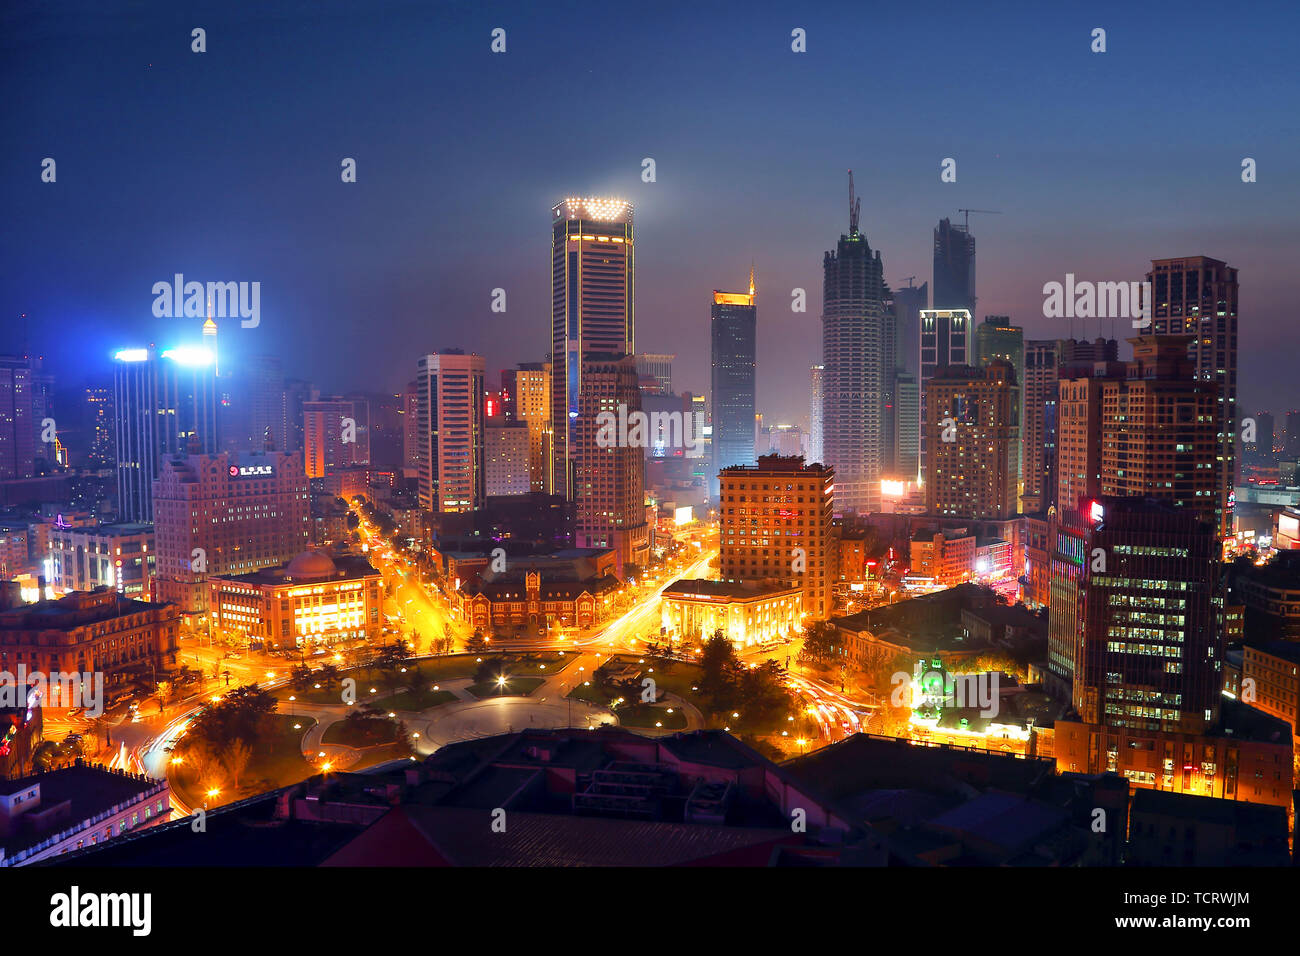 Landscape of Dalian city architecture Stock Photo